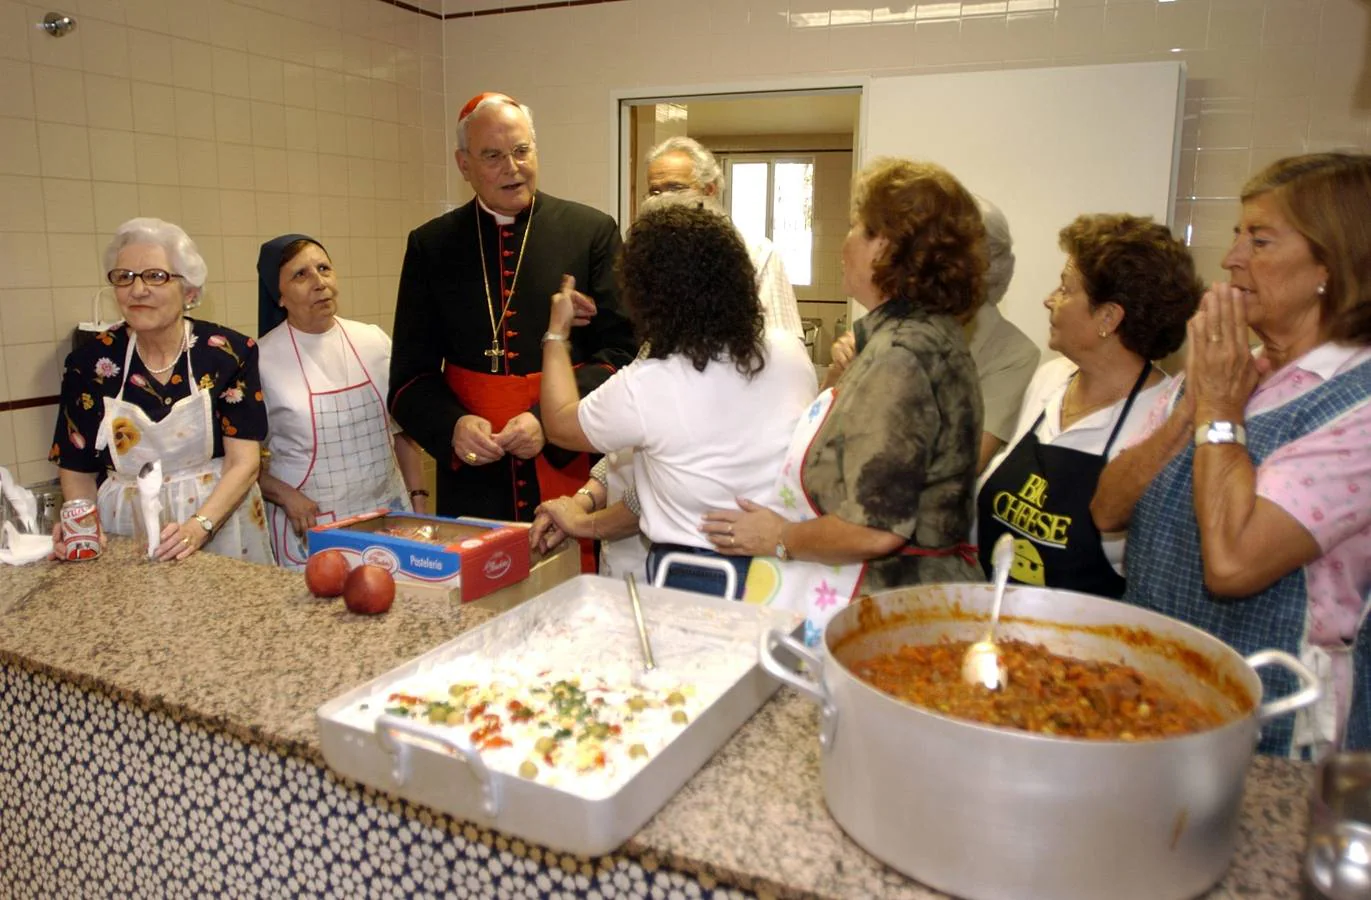 El cardenal visita el comedor social de las Hijas de la Caridad en Triana.  PEPE ORTEGA